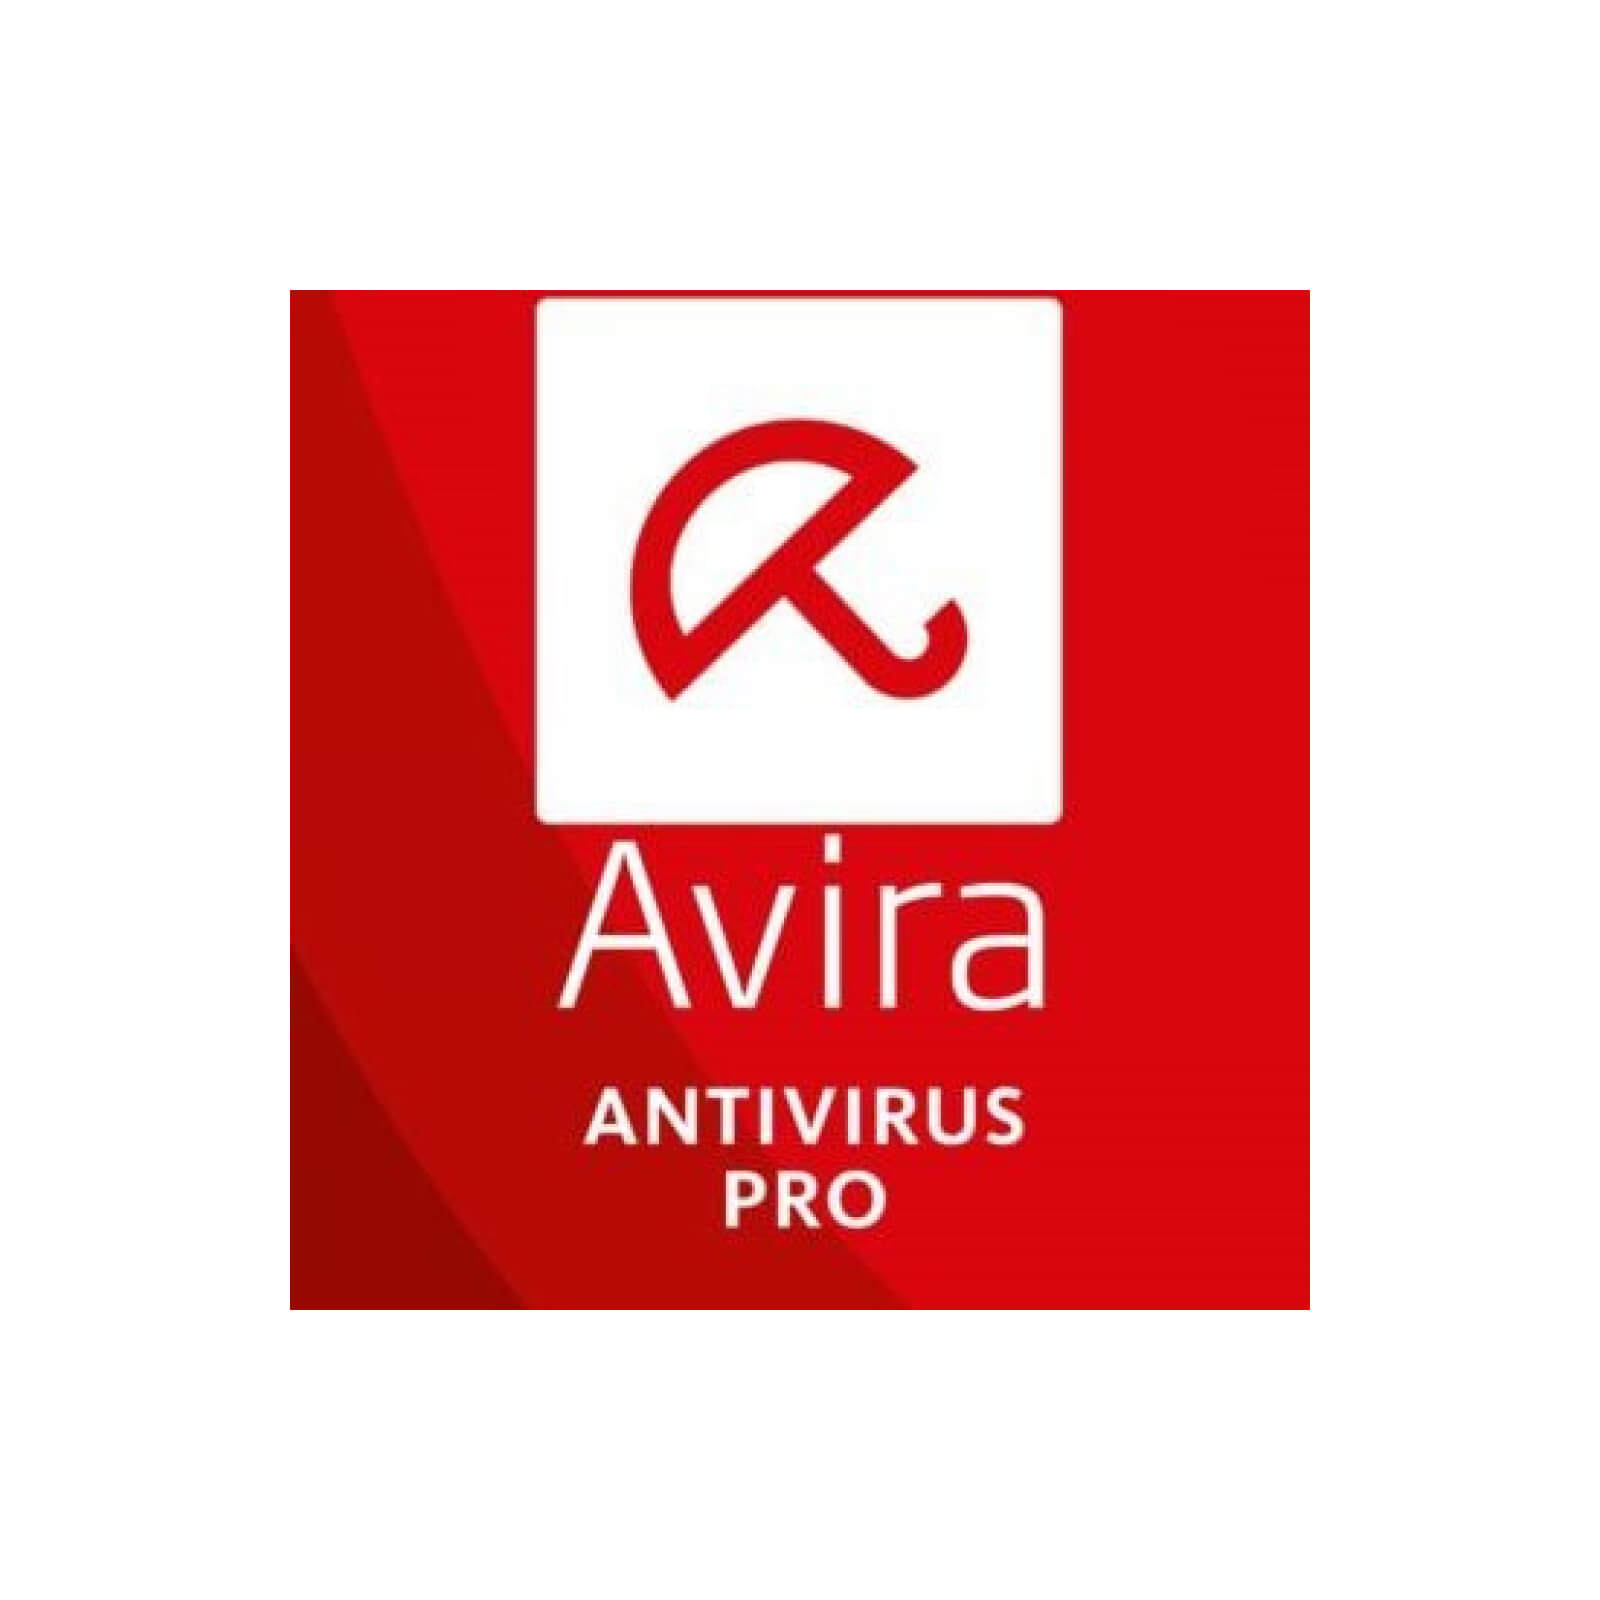 avira antivirus free download